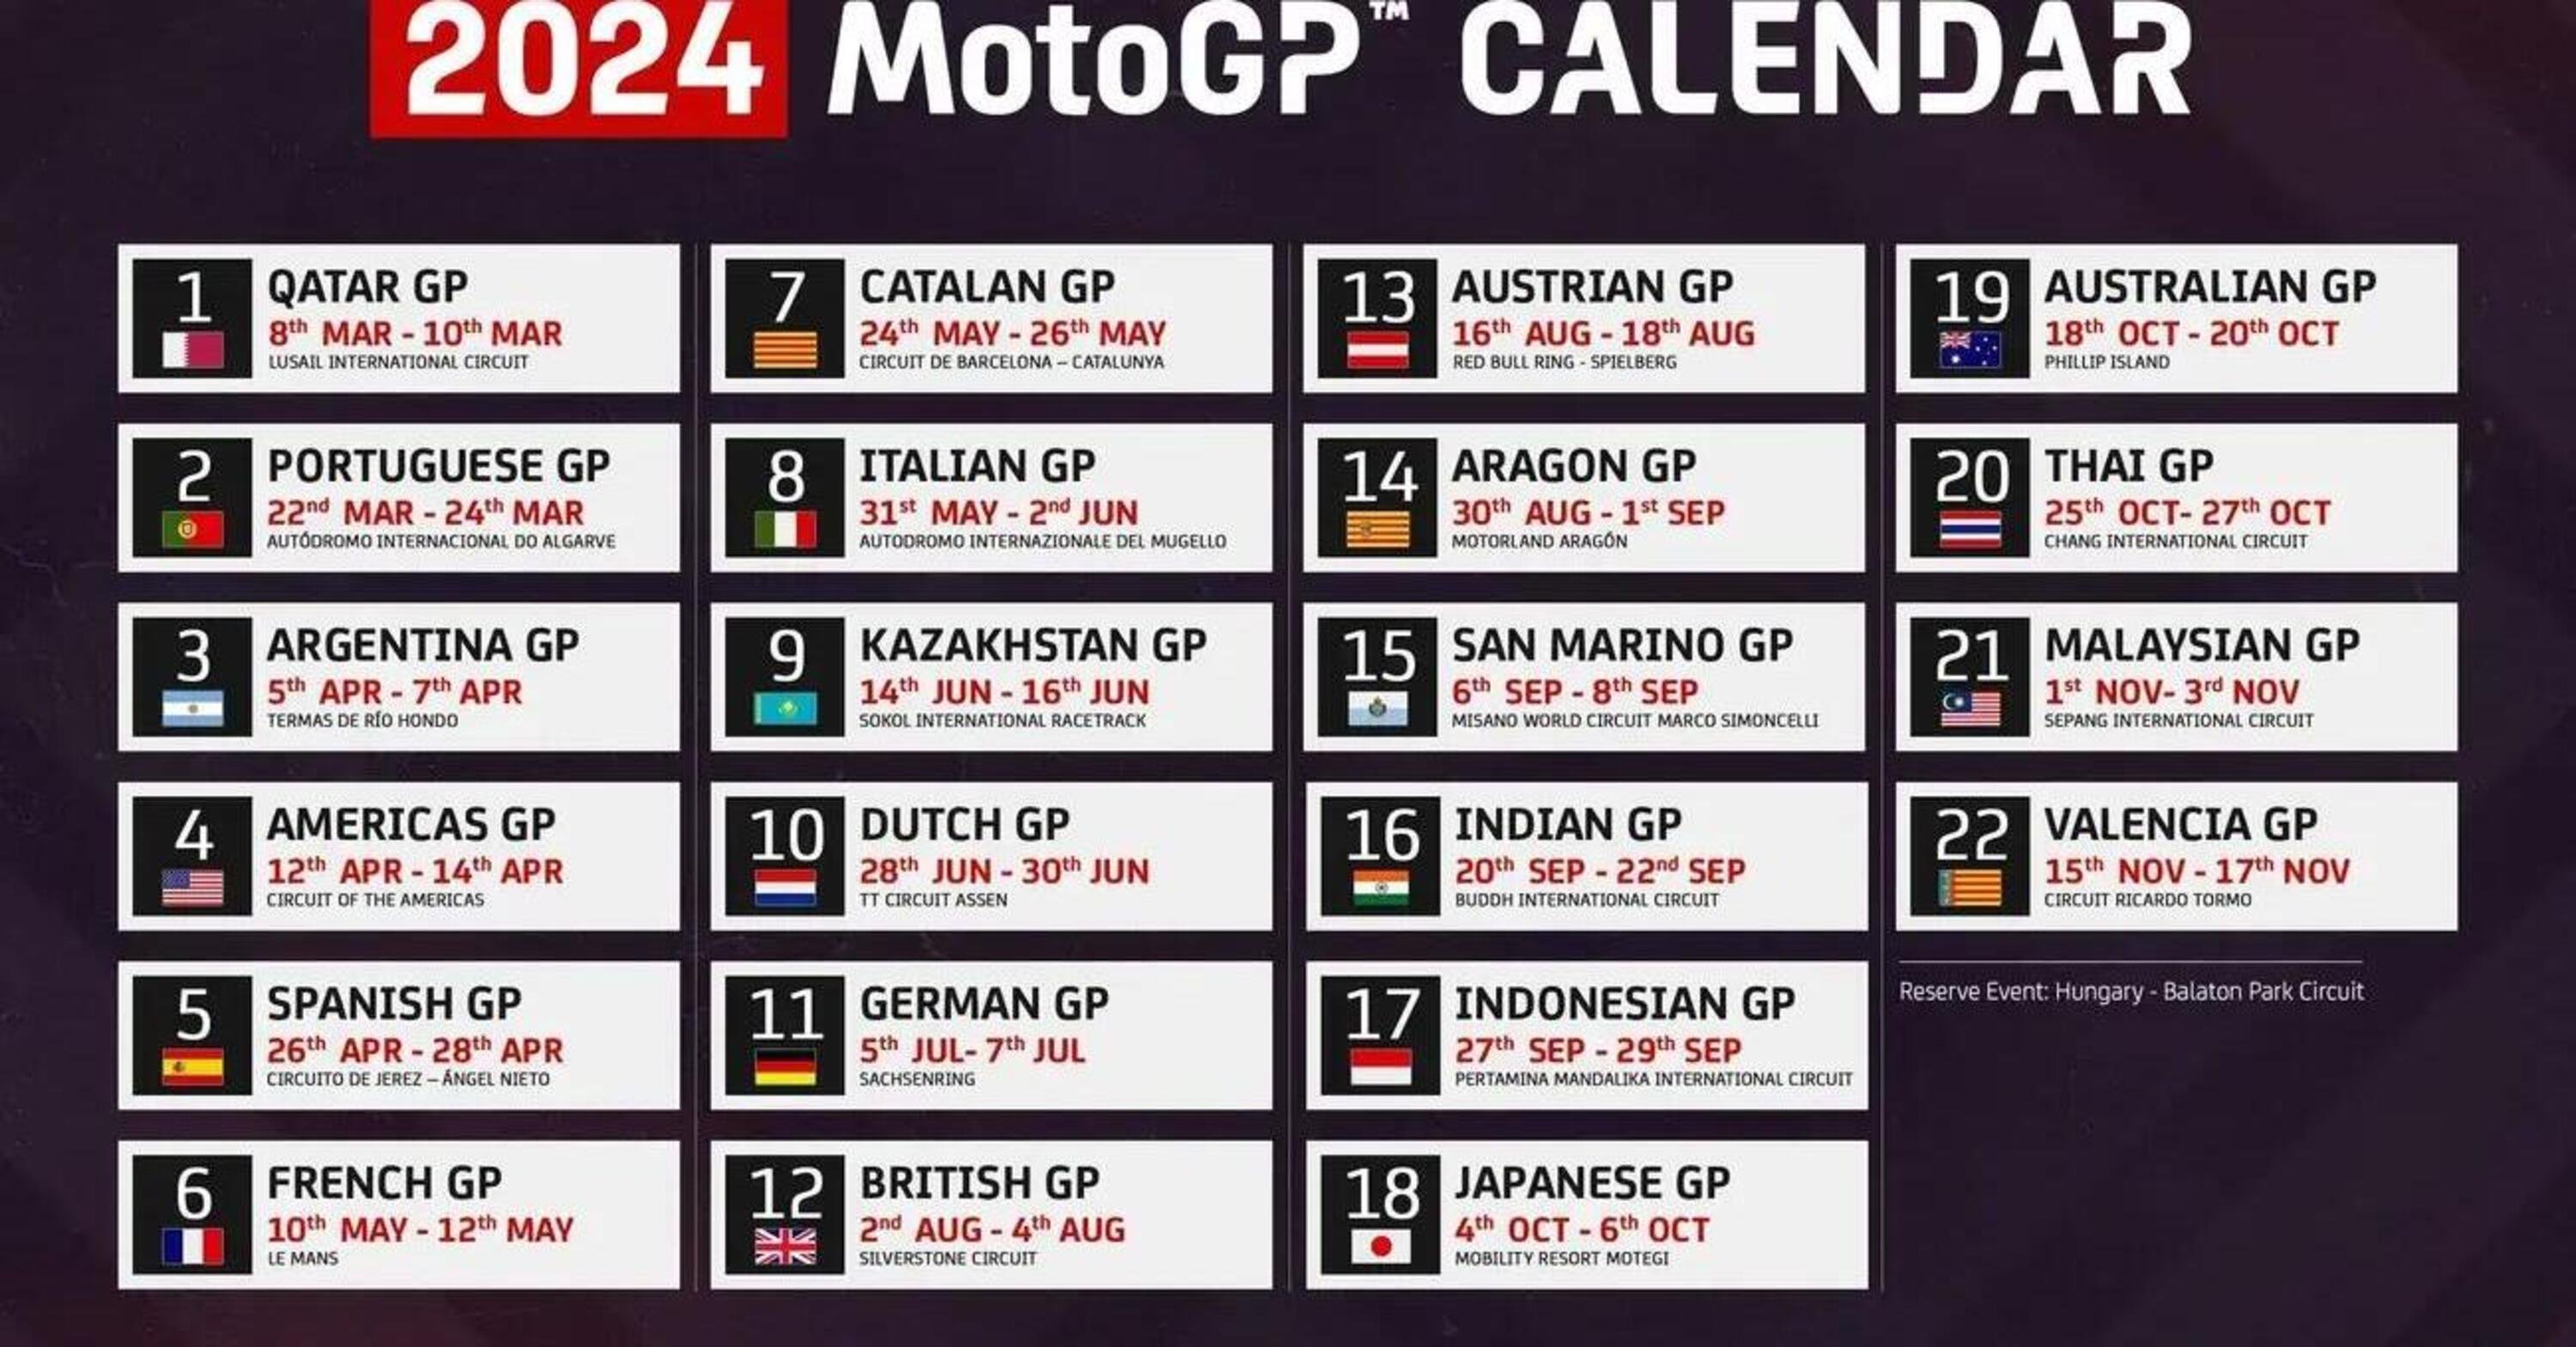 MotoGP 2024. Ecco il calendario provvisorio per il 2024: 22 GP (44 gare!),  quattro doppie, tre triple, otto mesi di gare - MotoGP 